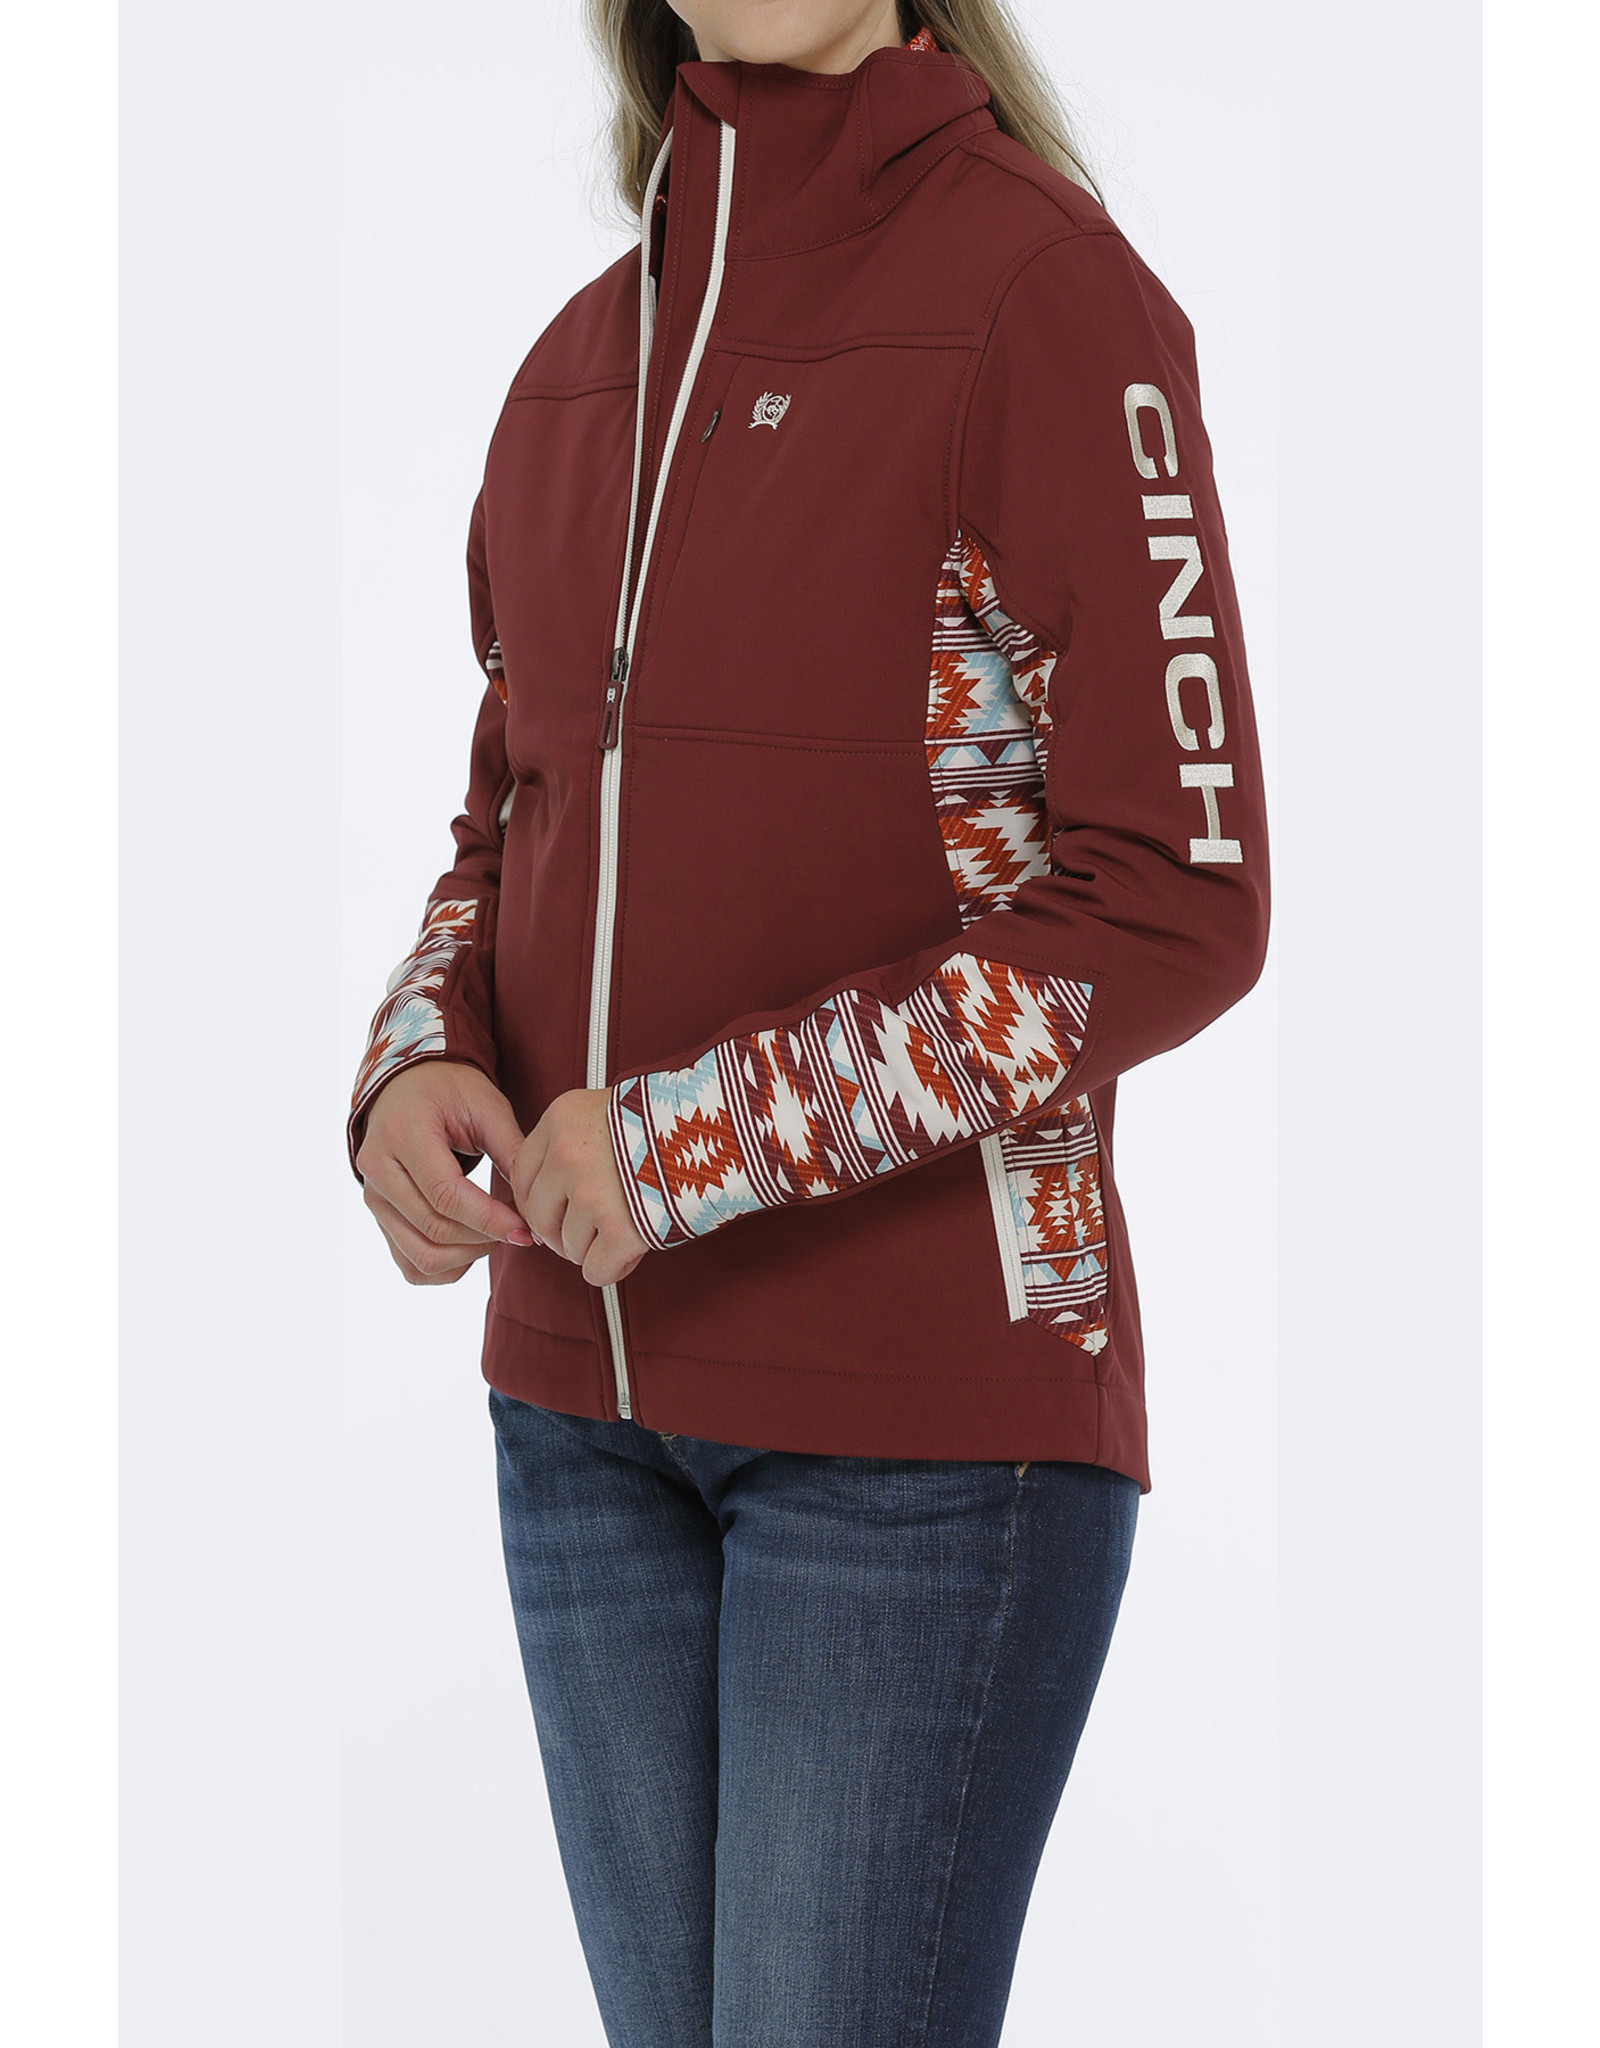 Cinch Ladies Burgundy Southwestern Print MAJ9857001 BUR Concealed Carry Jacket